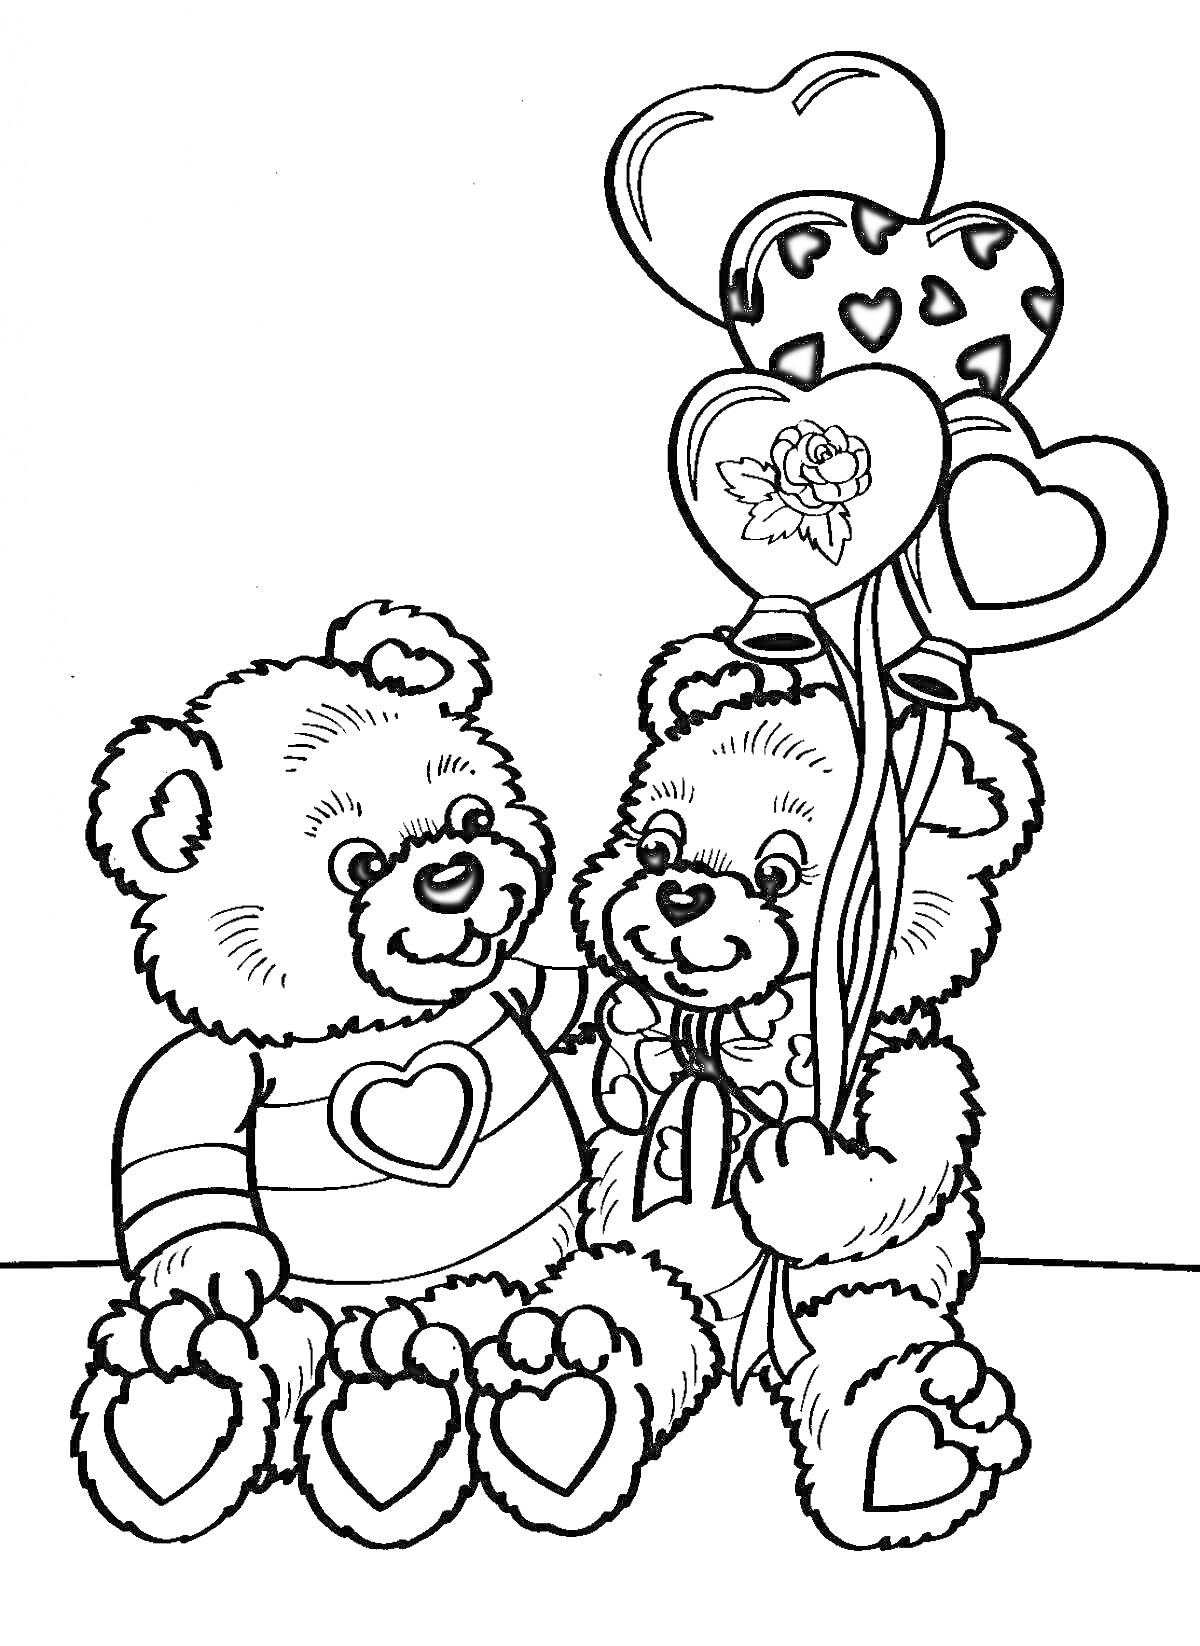  Два медвежонка Тедди с воздушными шарами в форме сердец